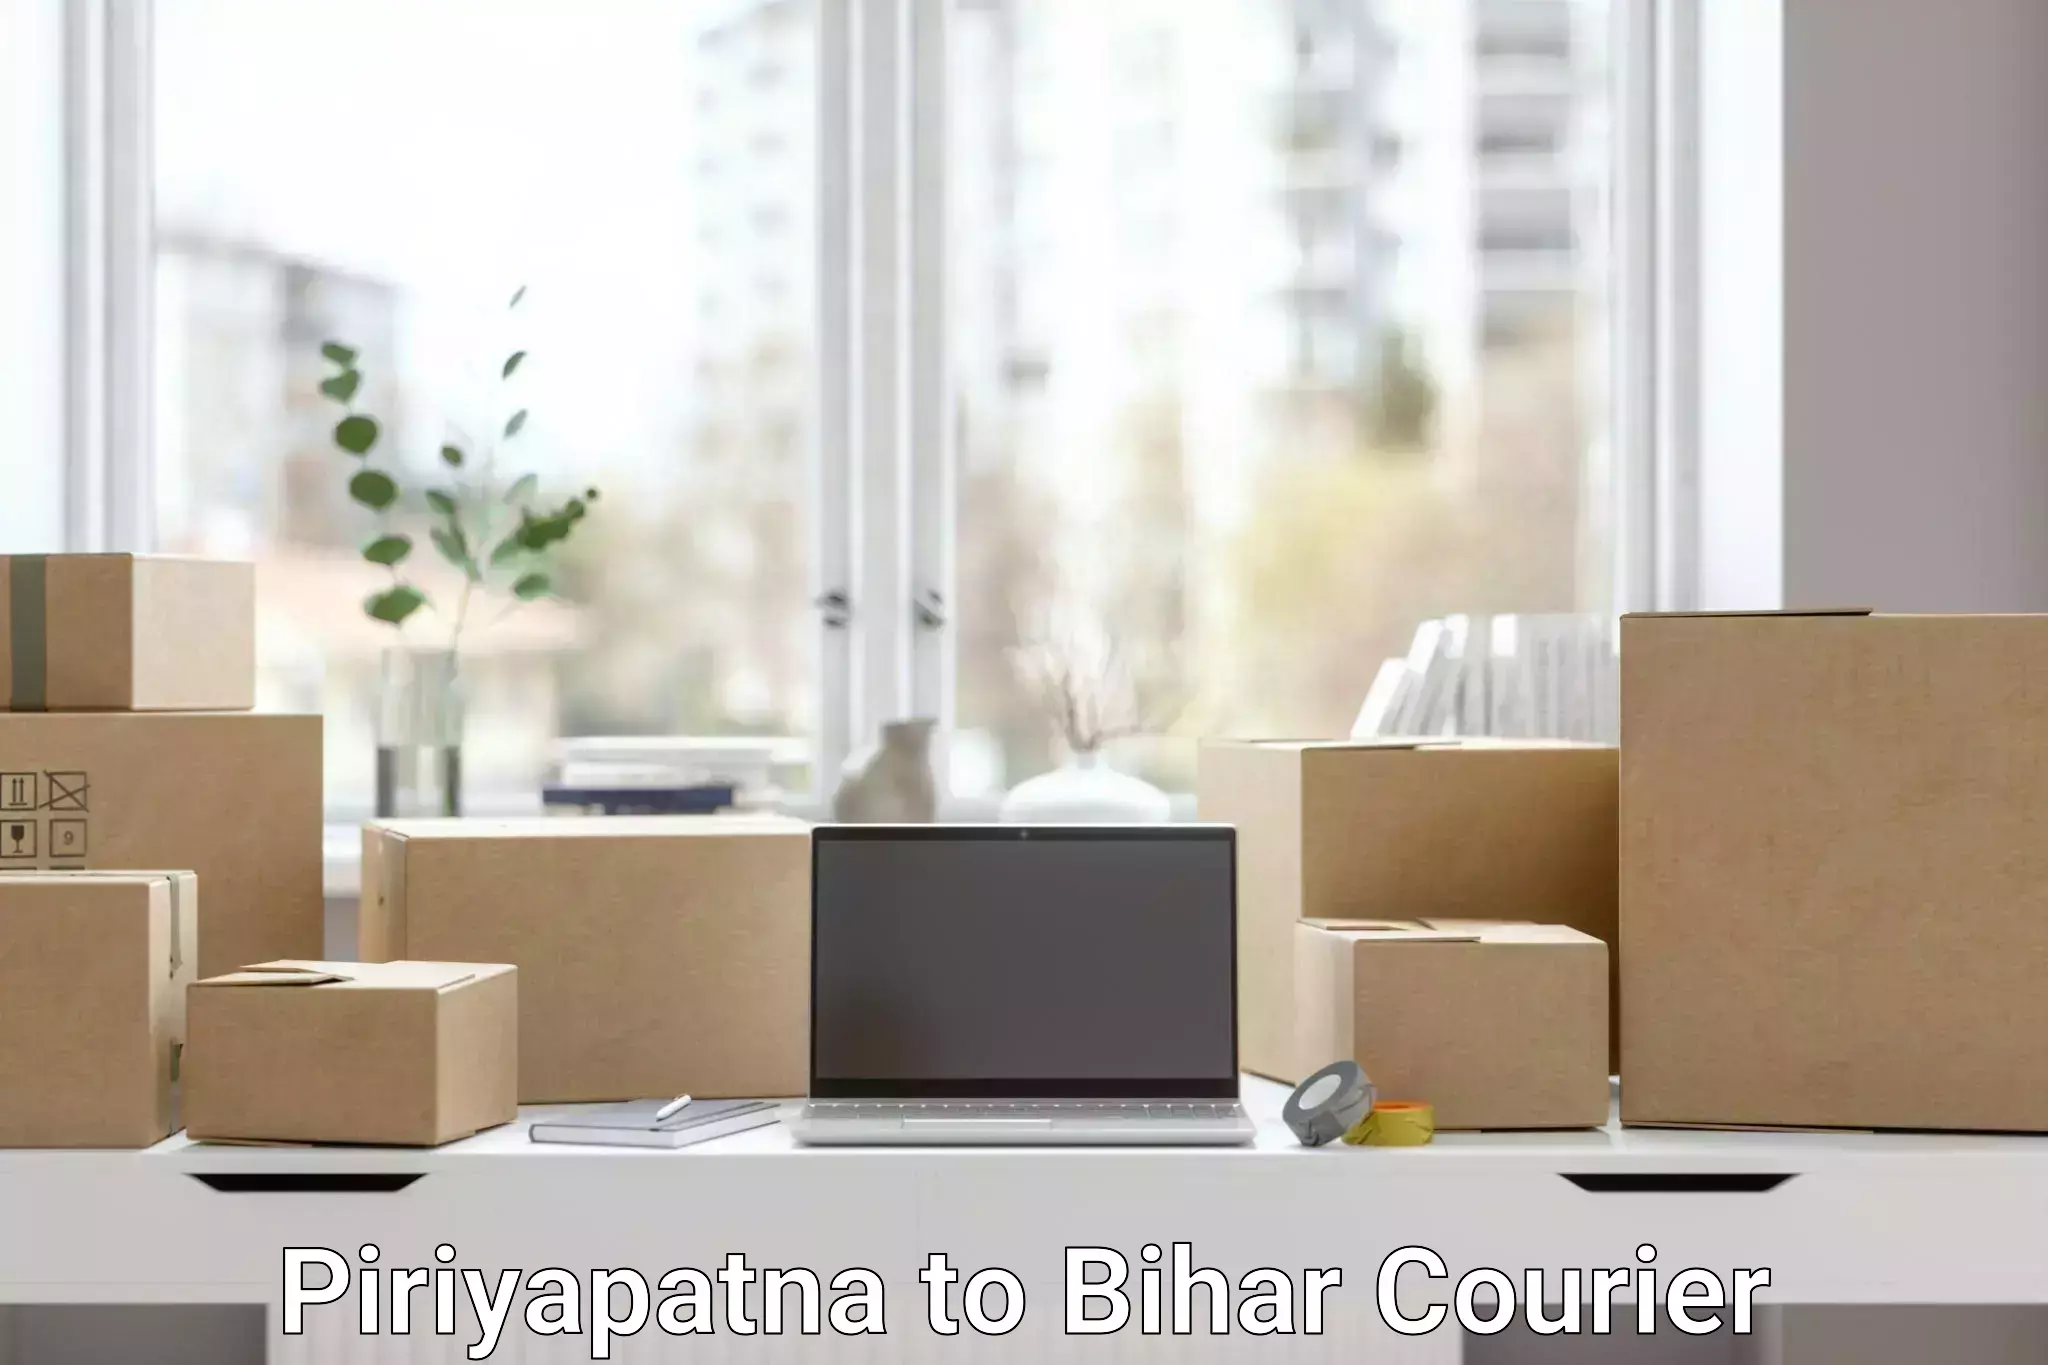 Residential courier service Piriyapatna to Thakurganj